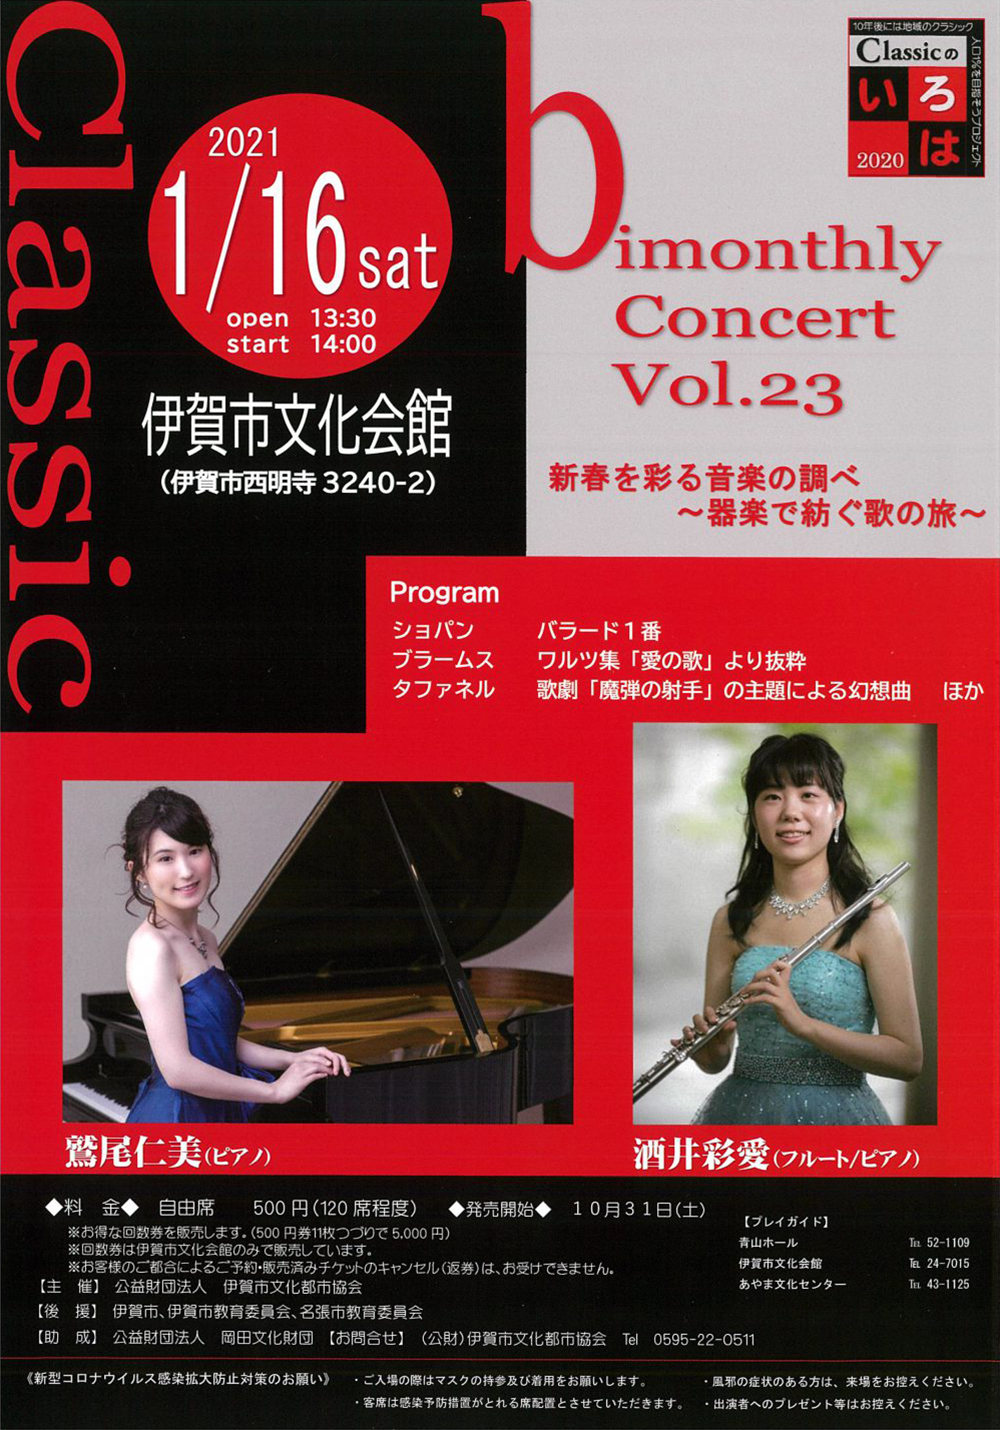 bimonthly Concert Vol.23 新春を彩る音楽の調べ〜器楽で紡ぐ歌の旅〜